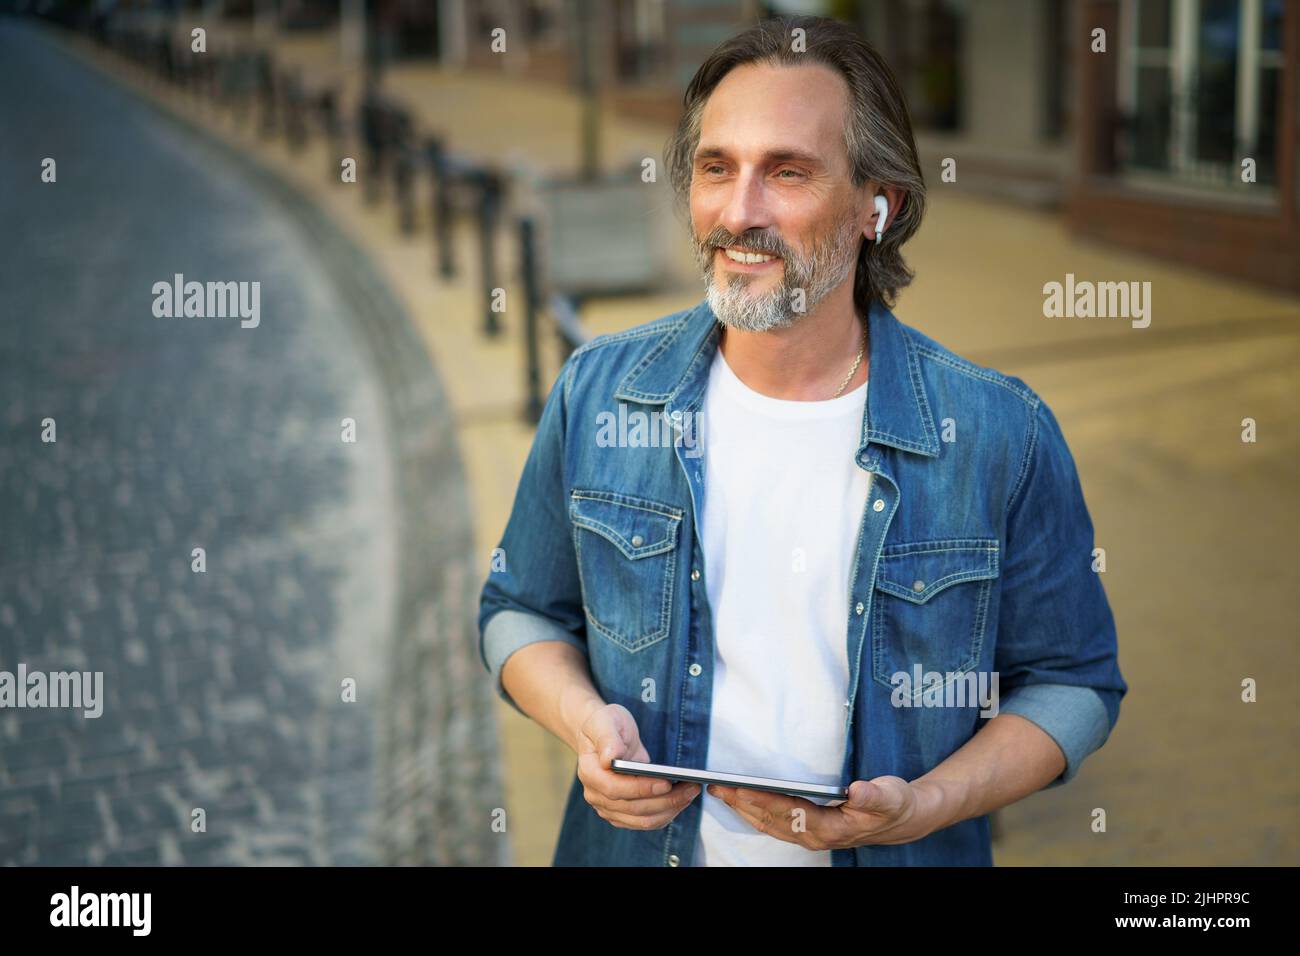 Voyager beau homme d'âge moyen à l'aide d'une tablette numérique passer un appel tout en se tenant dans les rues urbaines. Homme mature parlant ou écoutant de la musique utilisez des écouteurs sans fil pour voyager dans les rues de la vieille ville. Banque D'Images